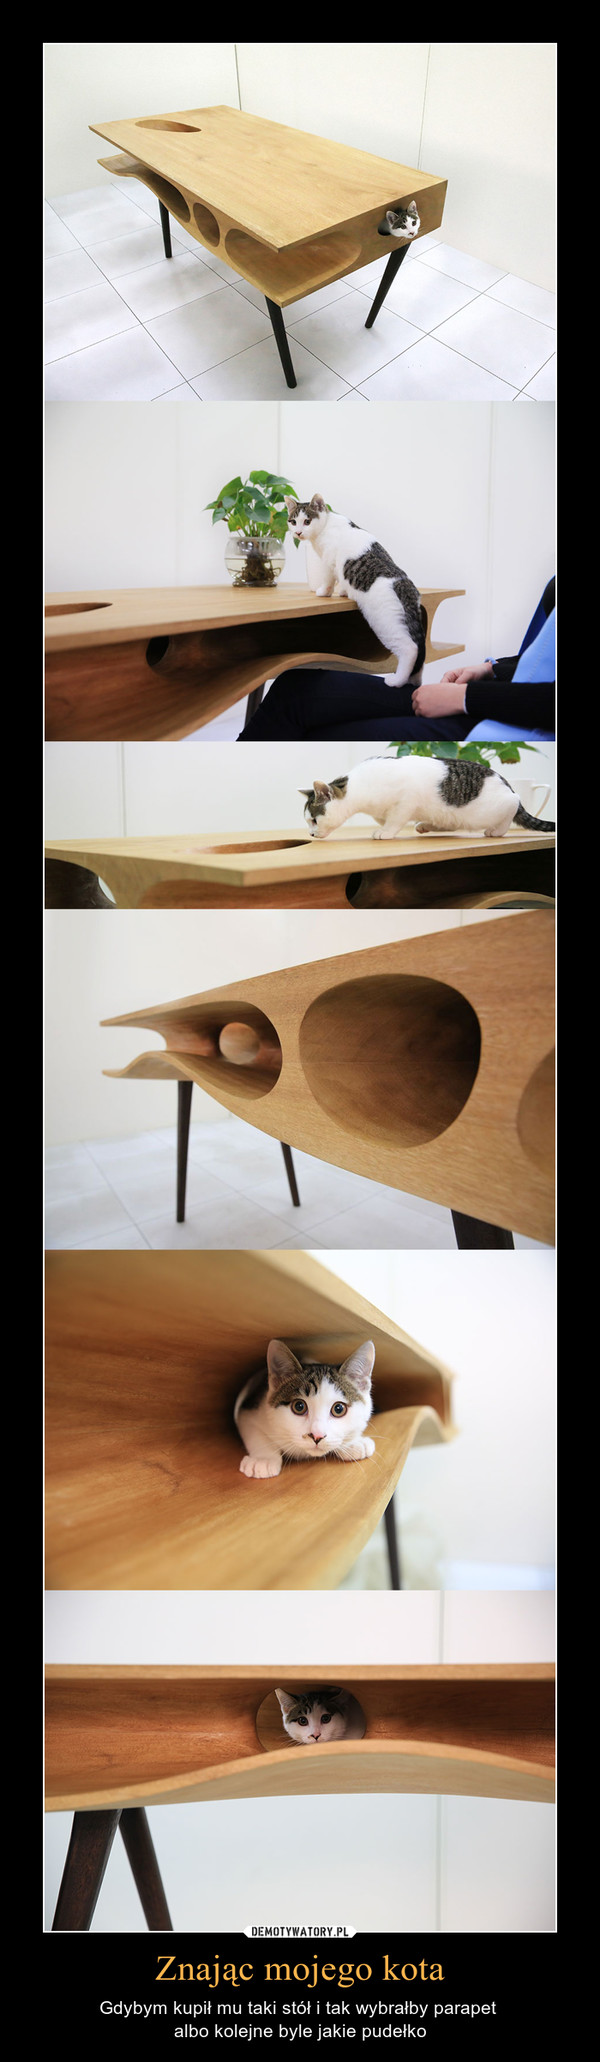 Znając mojego kota – Gdybym kupił mu taki stół i tak wybrałby parapet albo kolejne byle jakie pudełko 